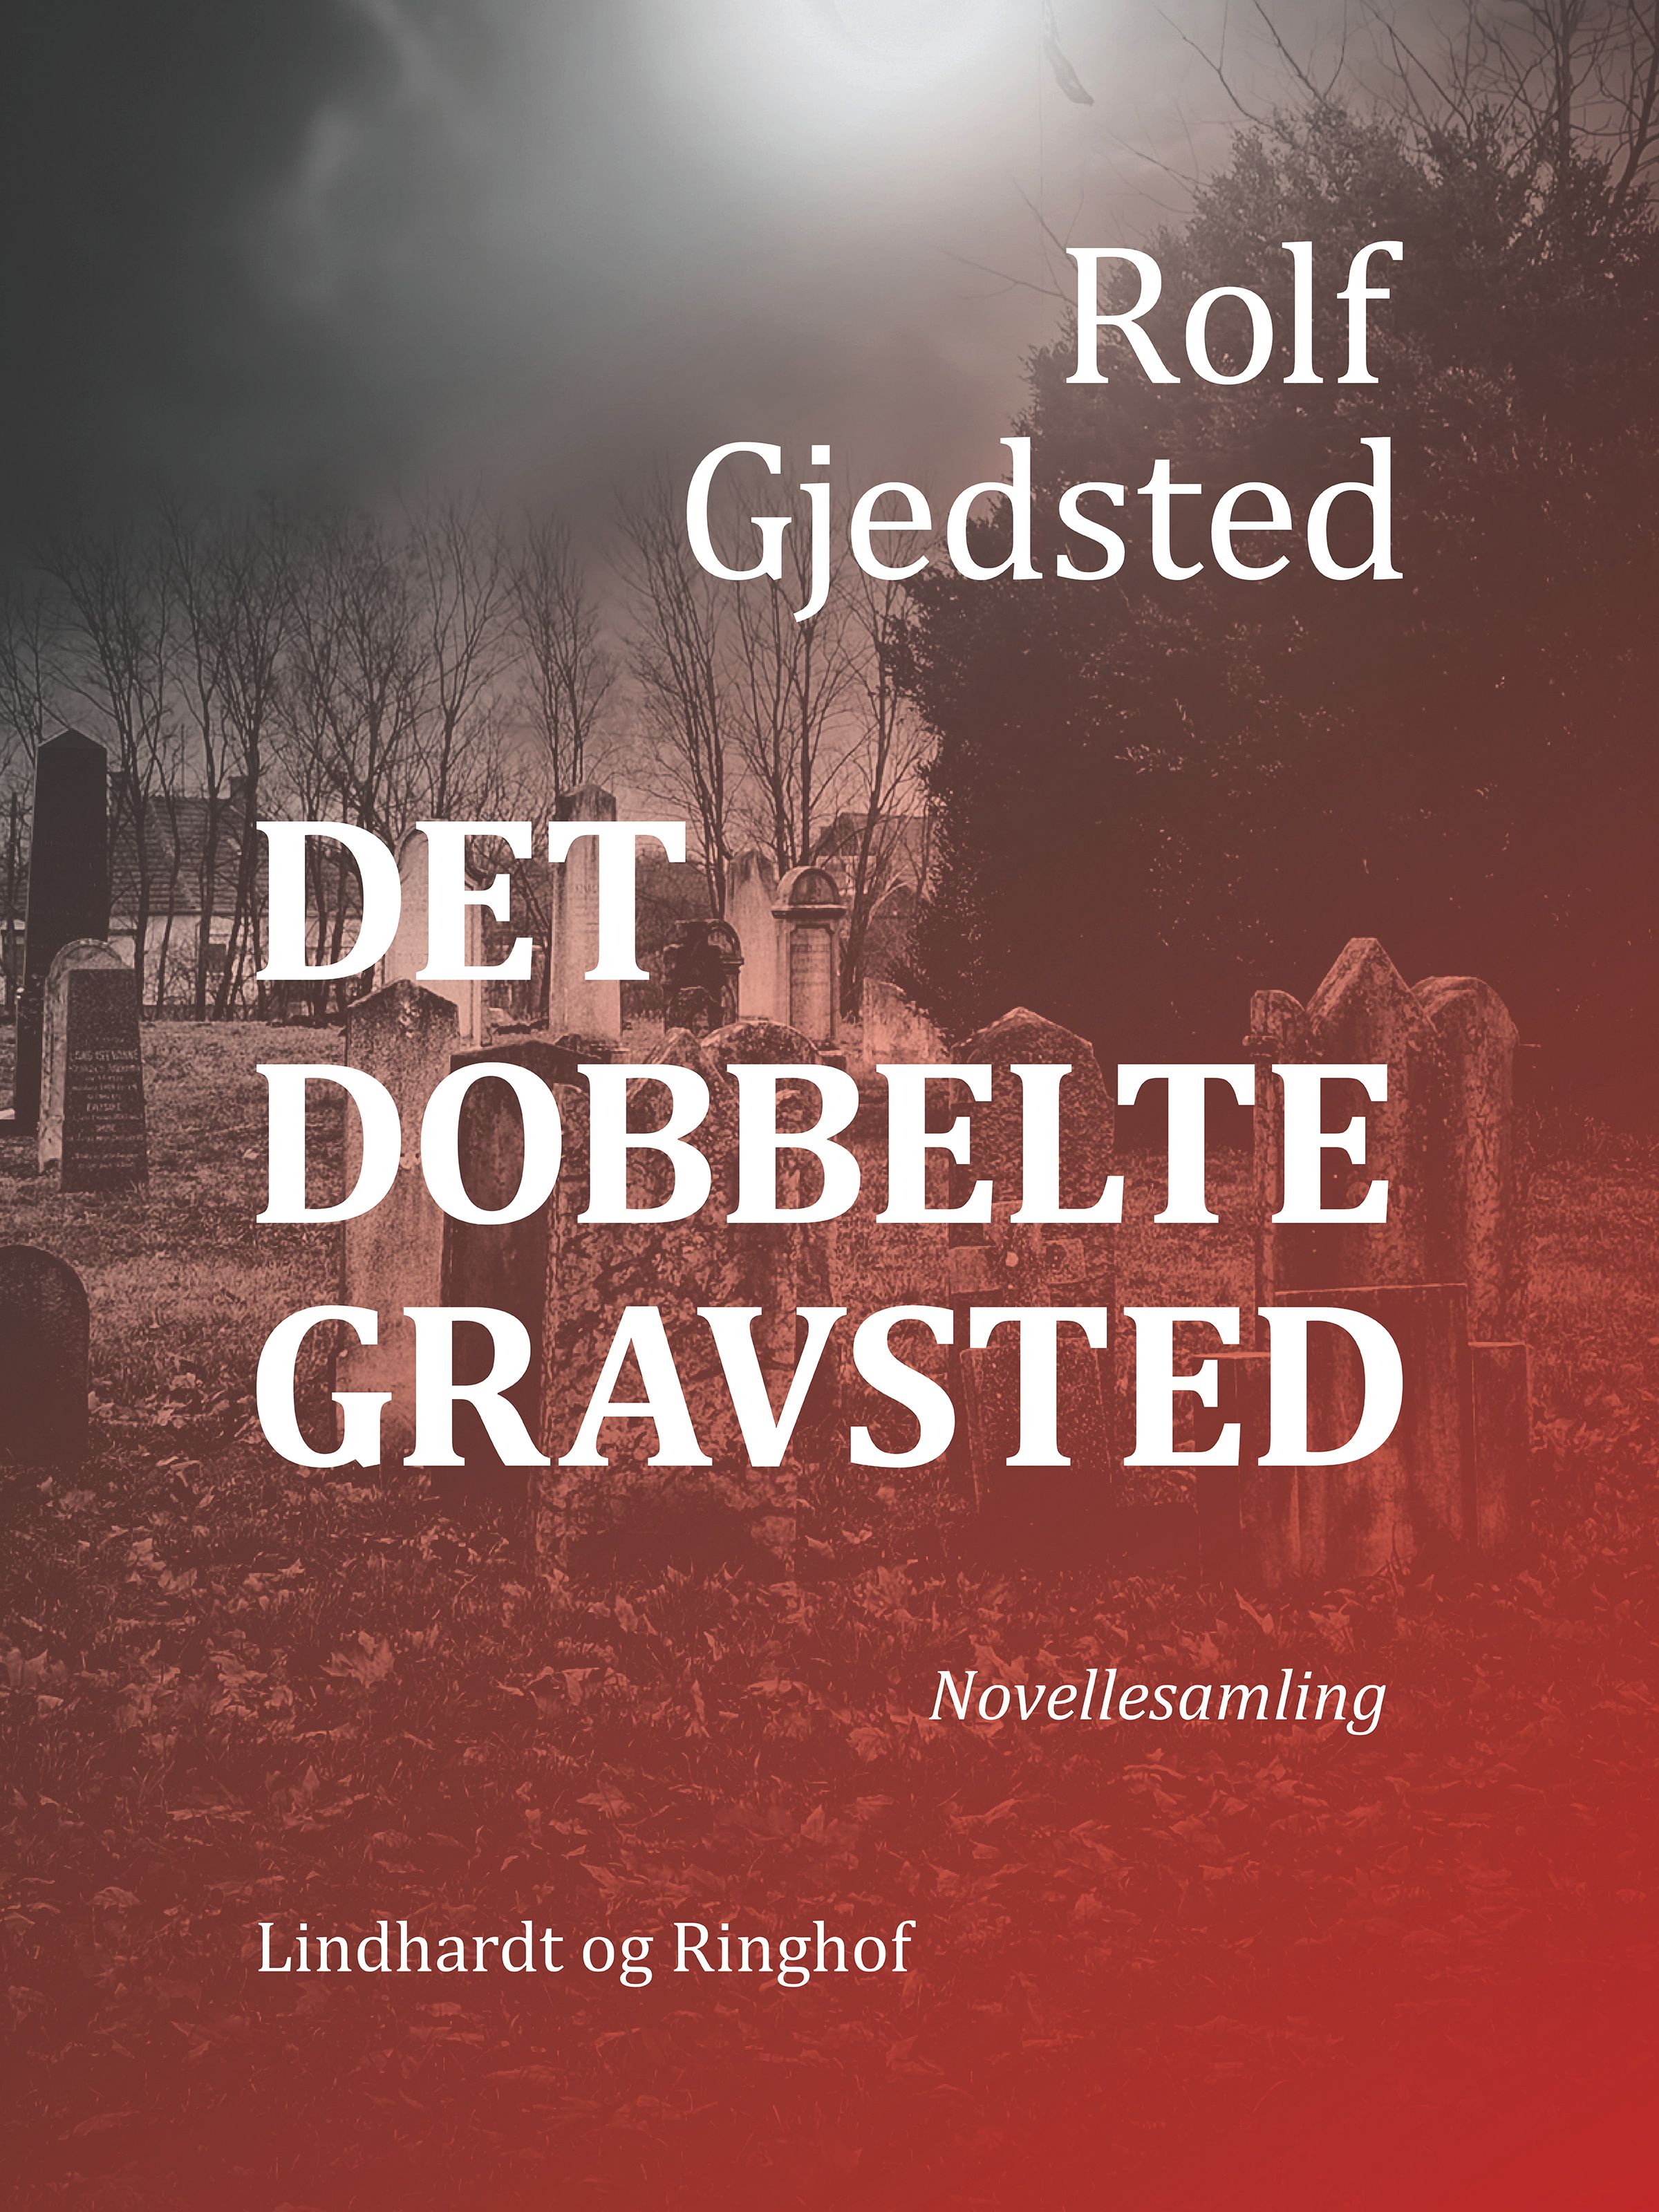 Det dobbelte gravsted, ljudbok av Rolf Gjedsted